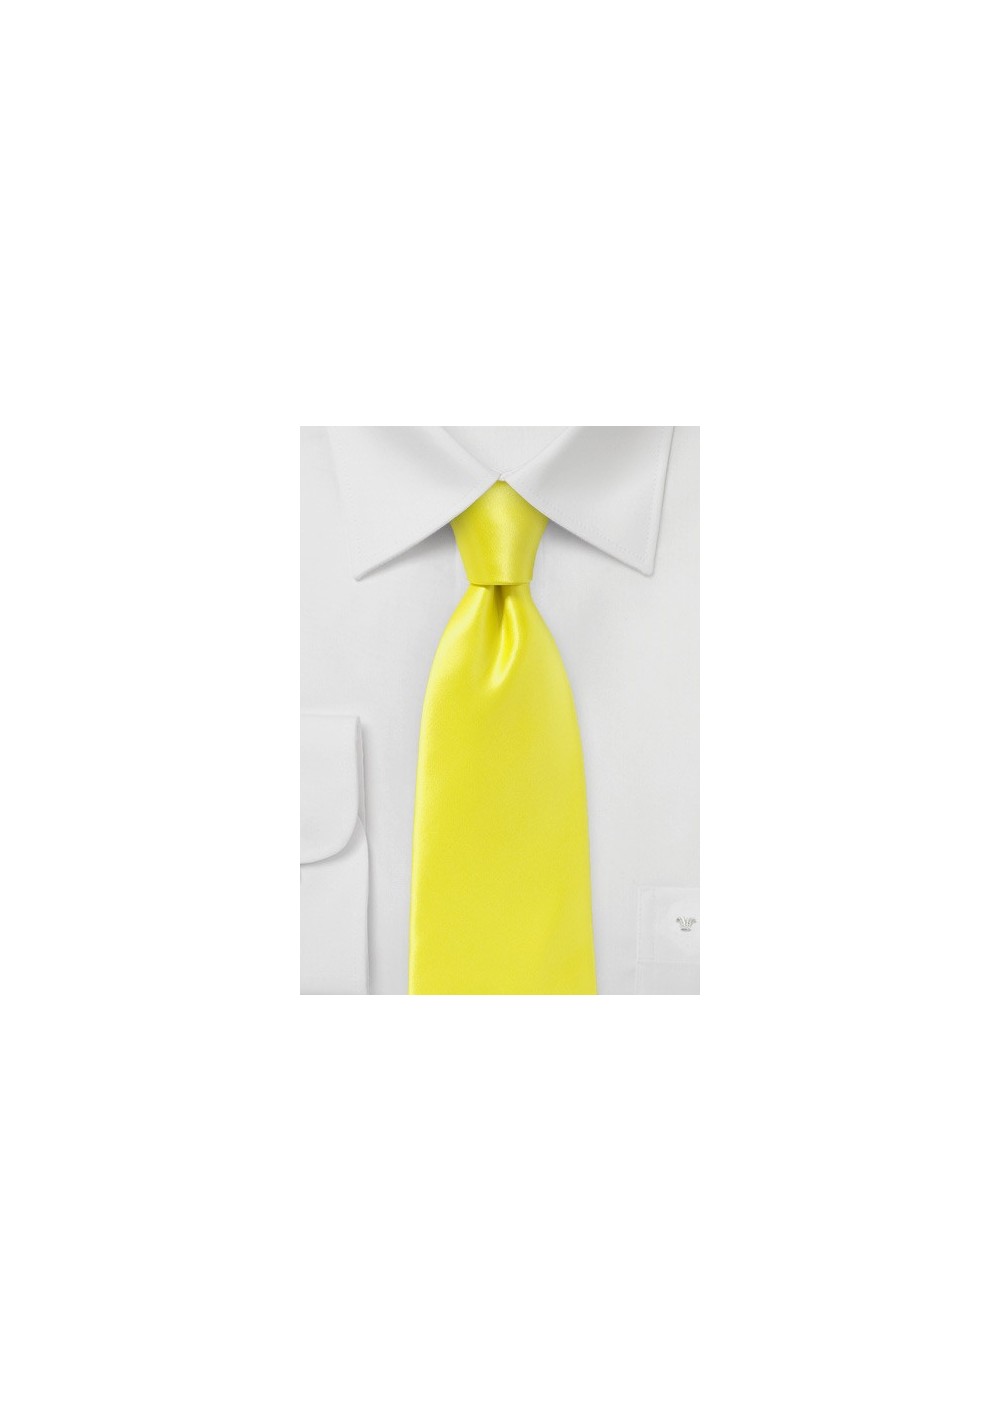 Bright Lemon Necktie in Pure Silk